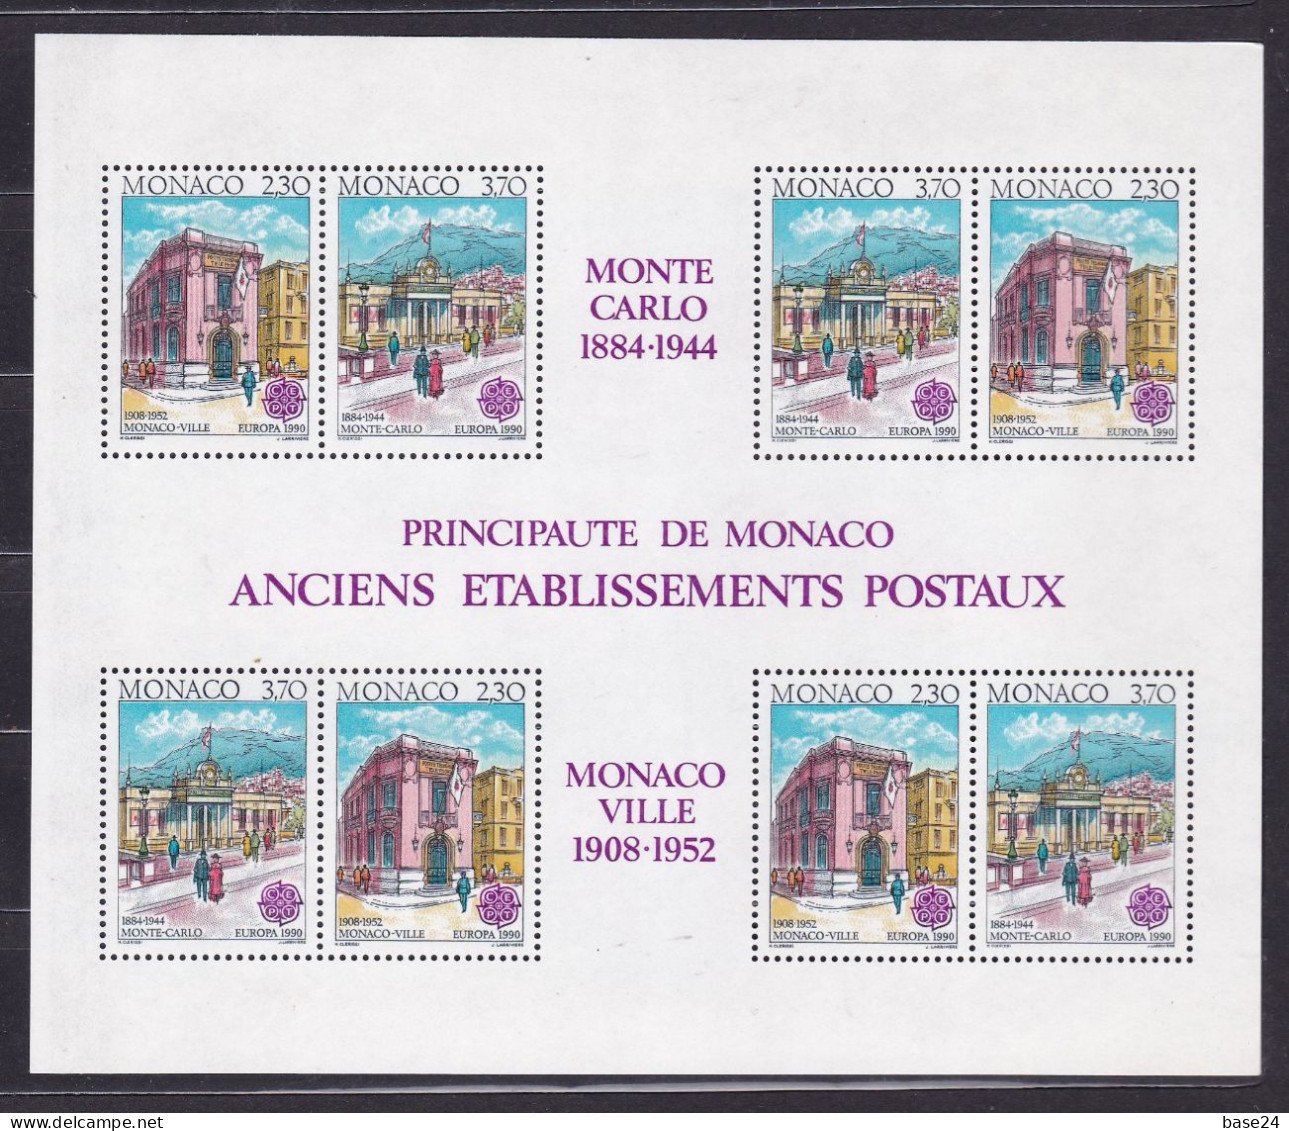 1990 Monaco EUROPA CEPT EUROPE 4 Serie Di 2 Valori Foglietto MNH** Edifici Postali, Post Offices Minisheet - 1990